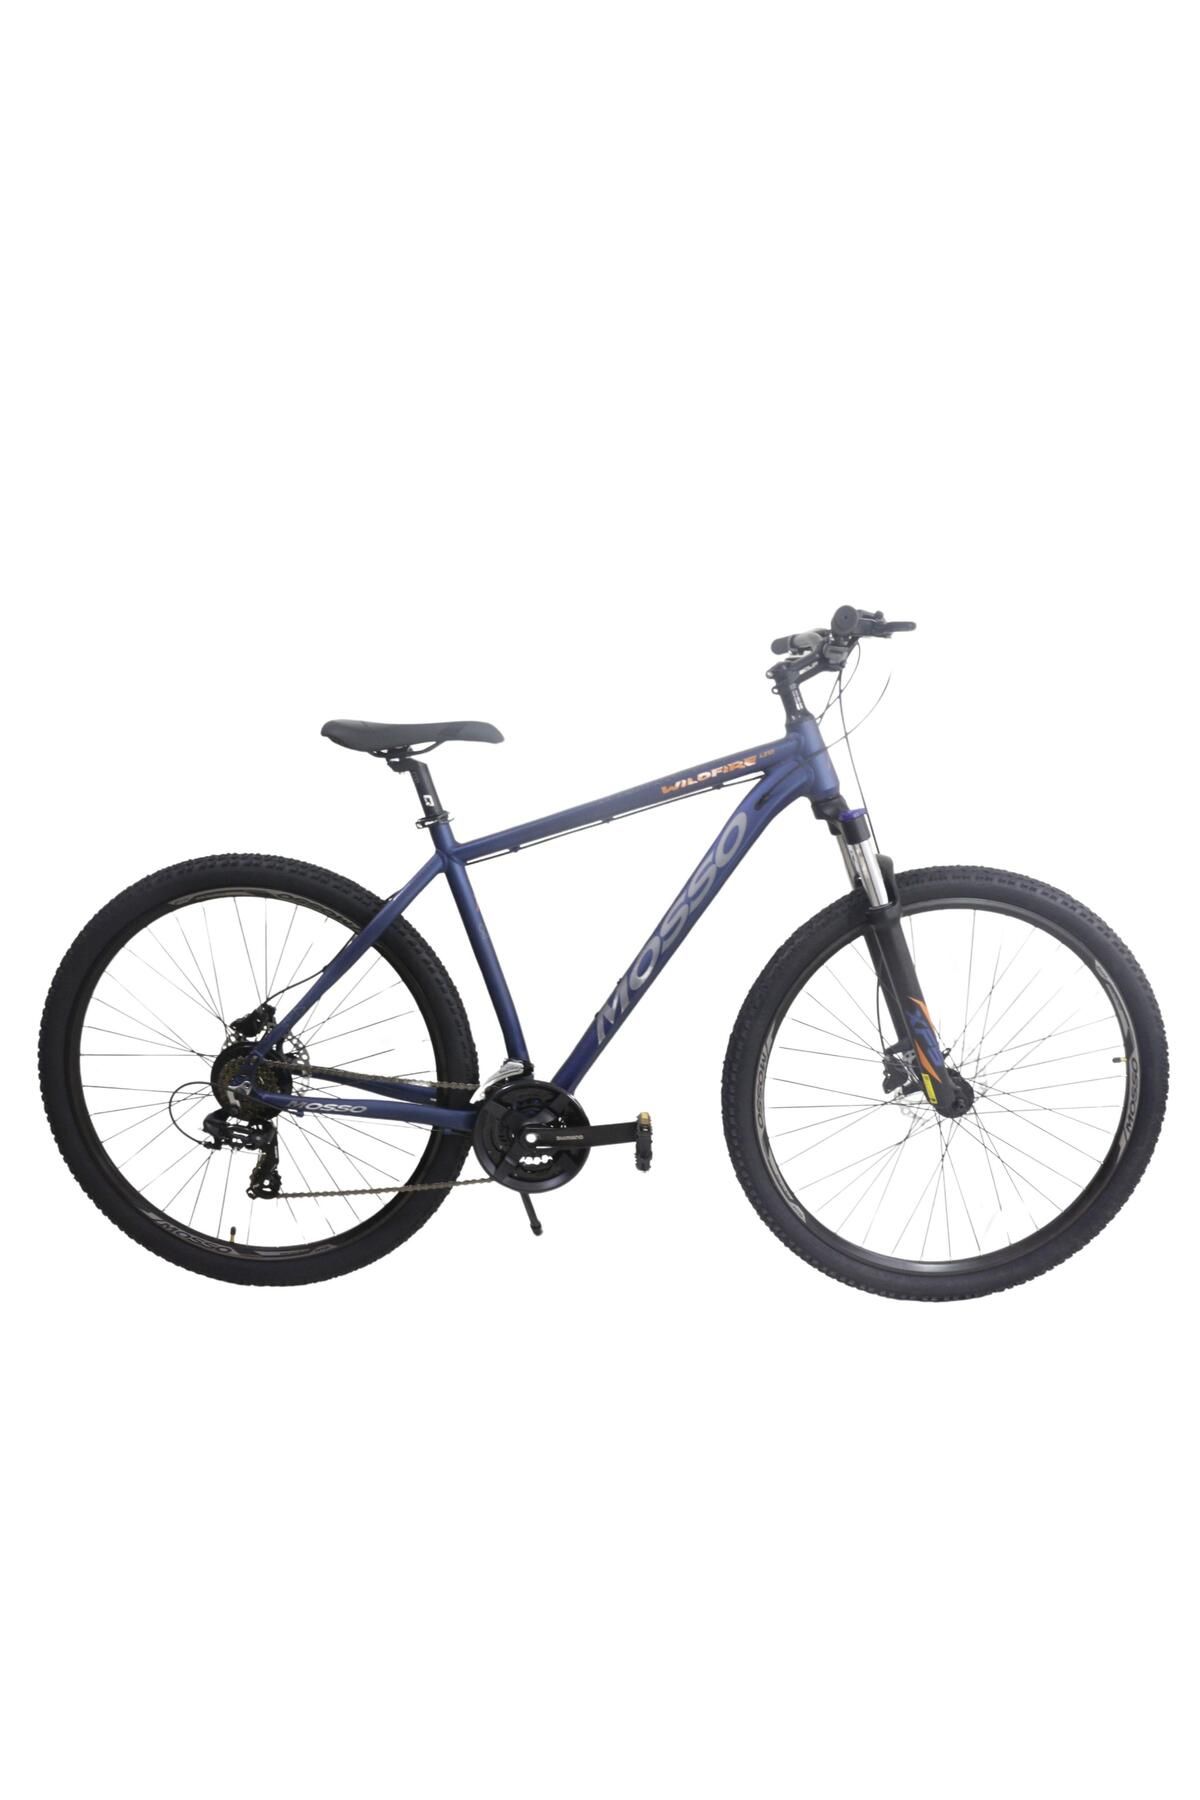 Mosso Ümit Mosso Wildfire 29 20-M Ltd Dağ Bisikleti Mavi